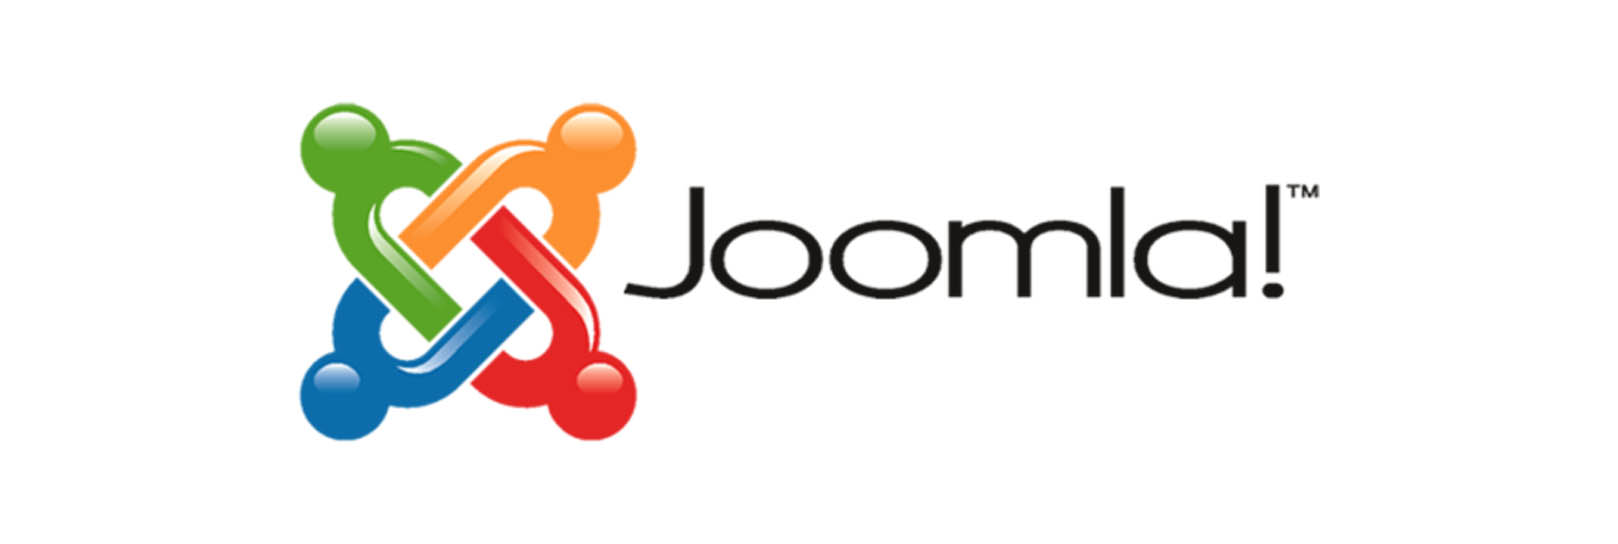 Πώς μπορώ να αναβαθμίσω την εγκατάστασή μου στο Joomla στην τελευταία έκδοση;